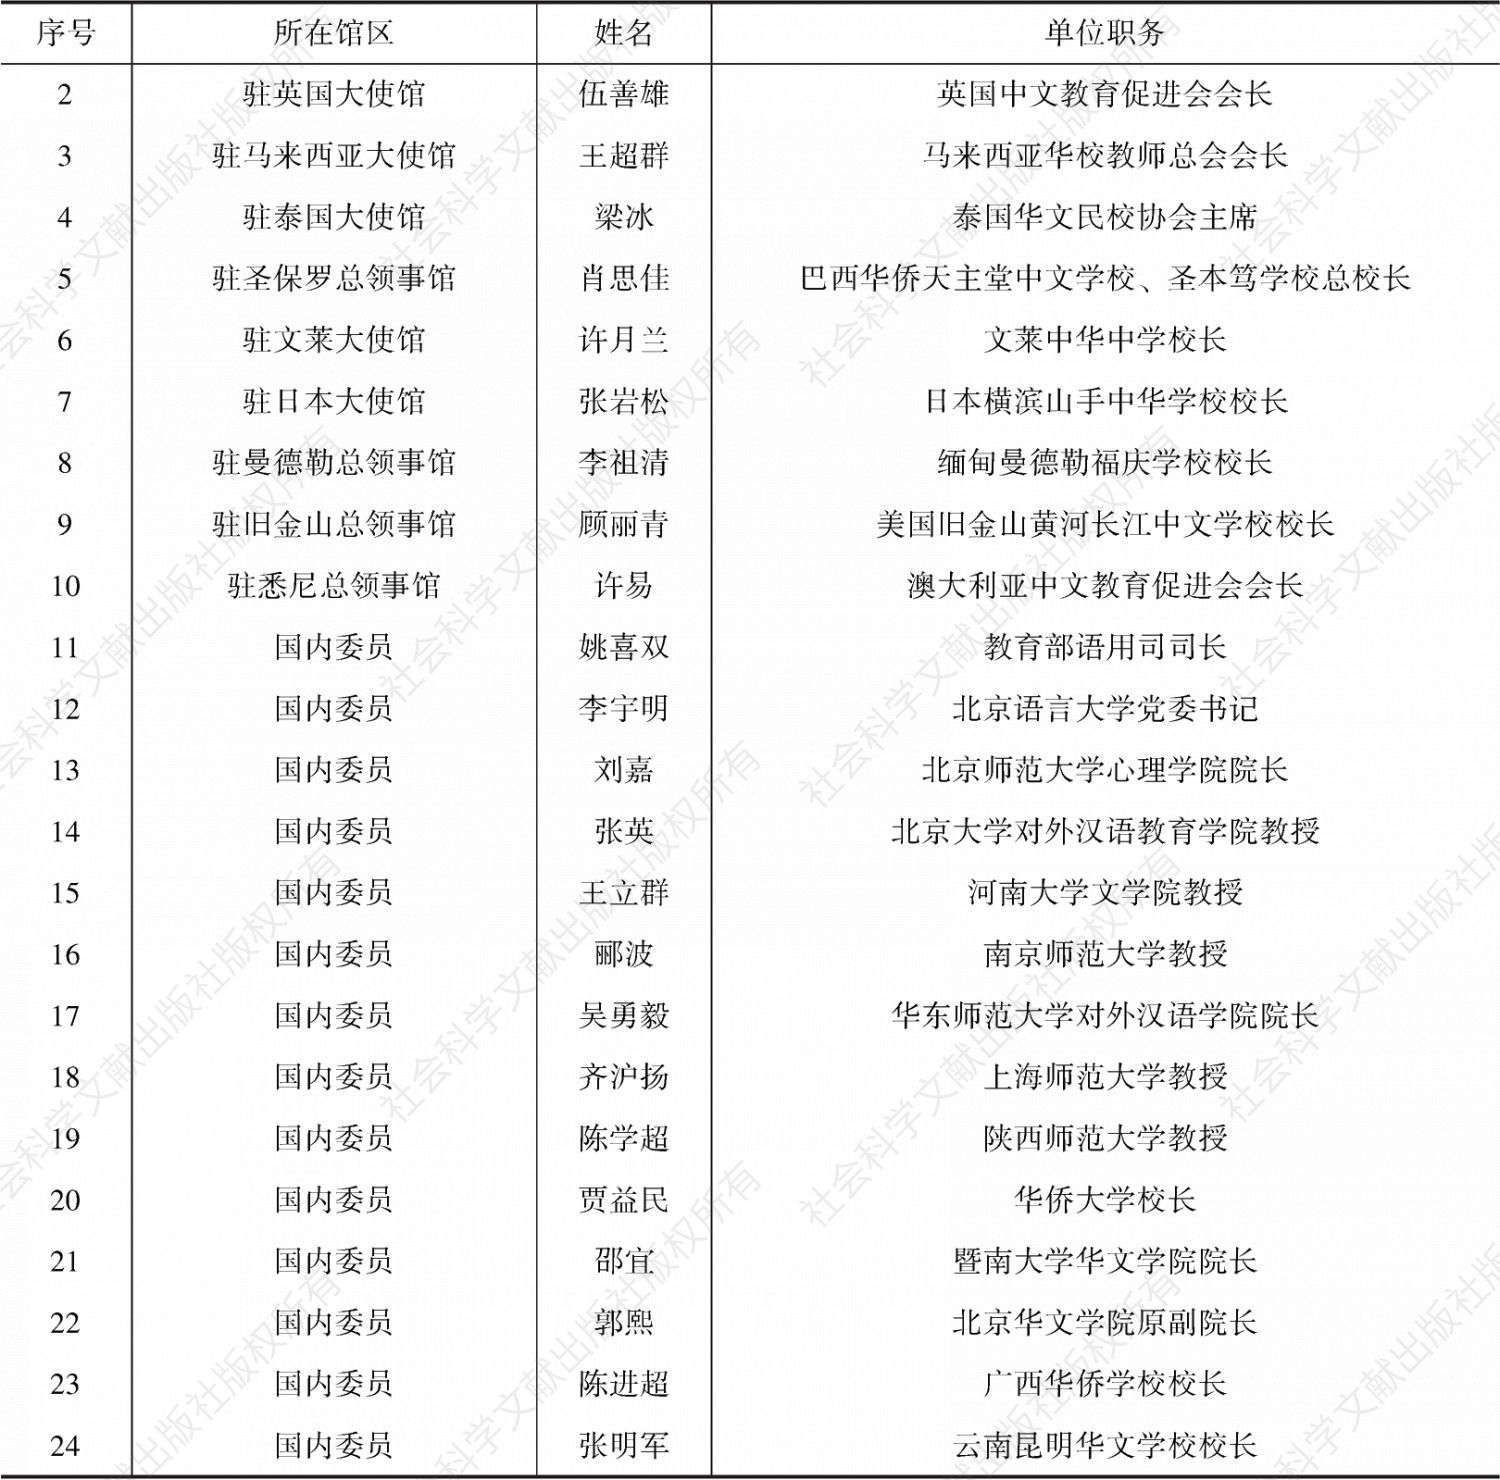 表2-1 华文教育分委员会组成人员名单（24人）-续表